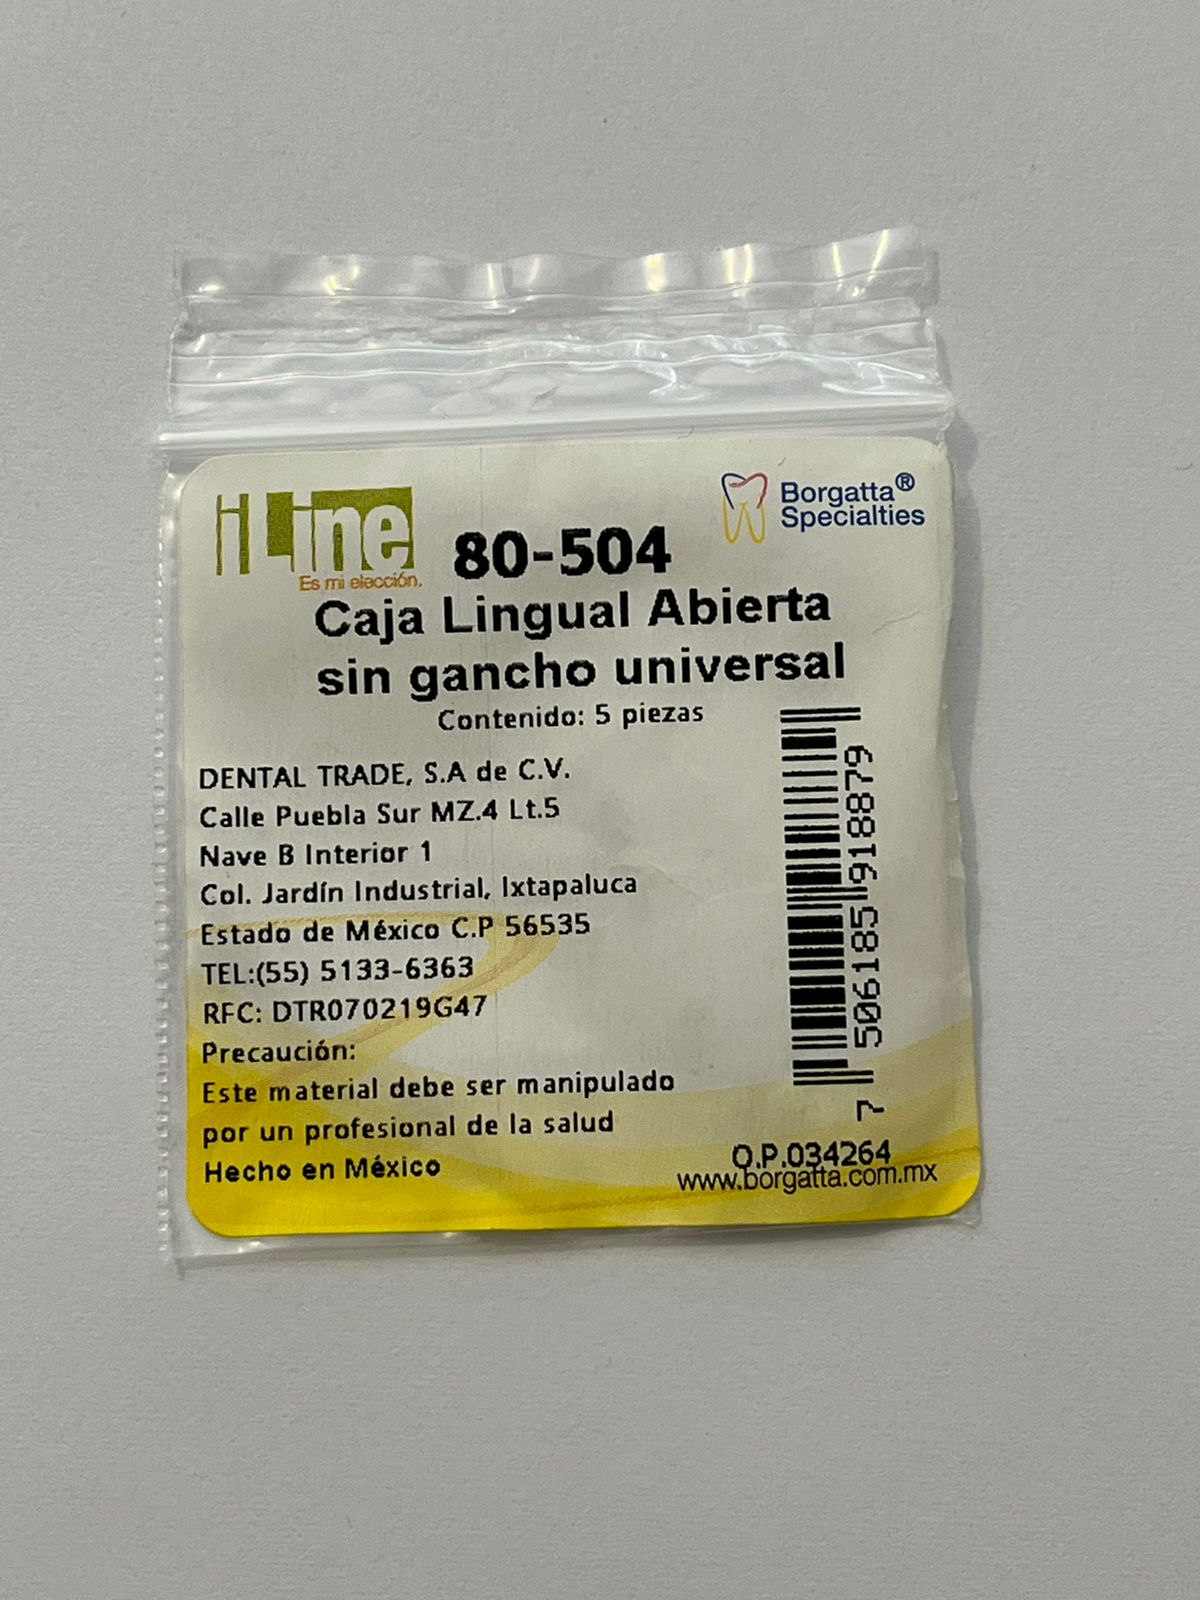 Caja lingual abierta sin gancho universal con 5 piezas 80-504 iline